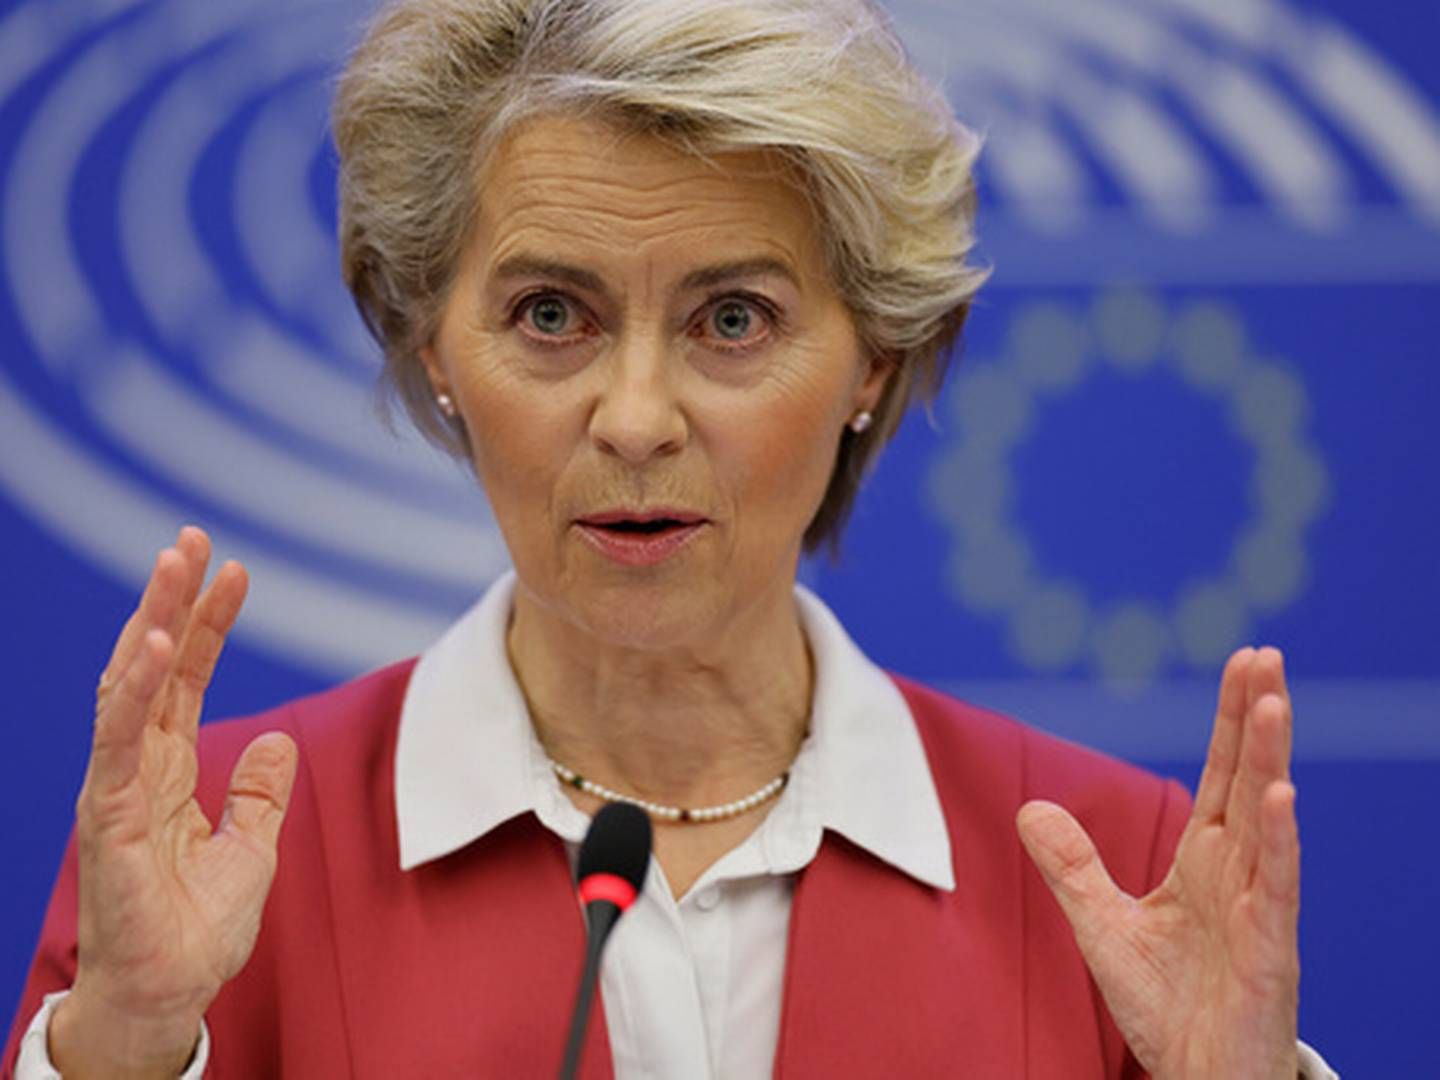 FÅR NEI FRA NORGE: EU-topp Ursula von der Leyen vil forhandle, men olje- og energiminister Terje Aasland (Ap) avviser at det er aktuelt med samtaler om en priskorridor på gass. | Foto: Jean-Francois Badias/AP/NTB